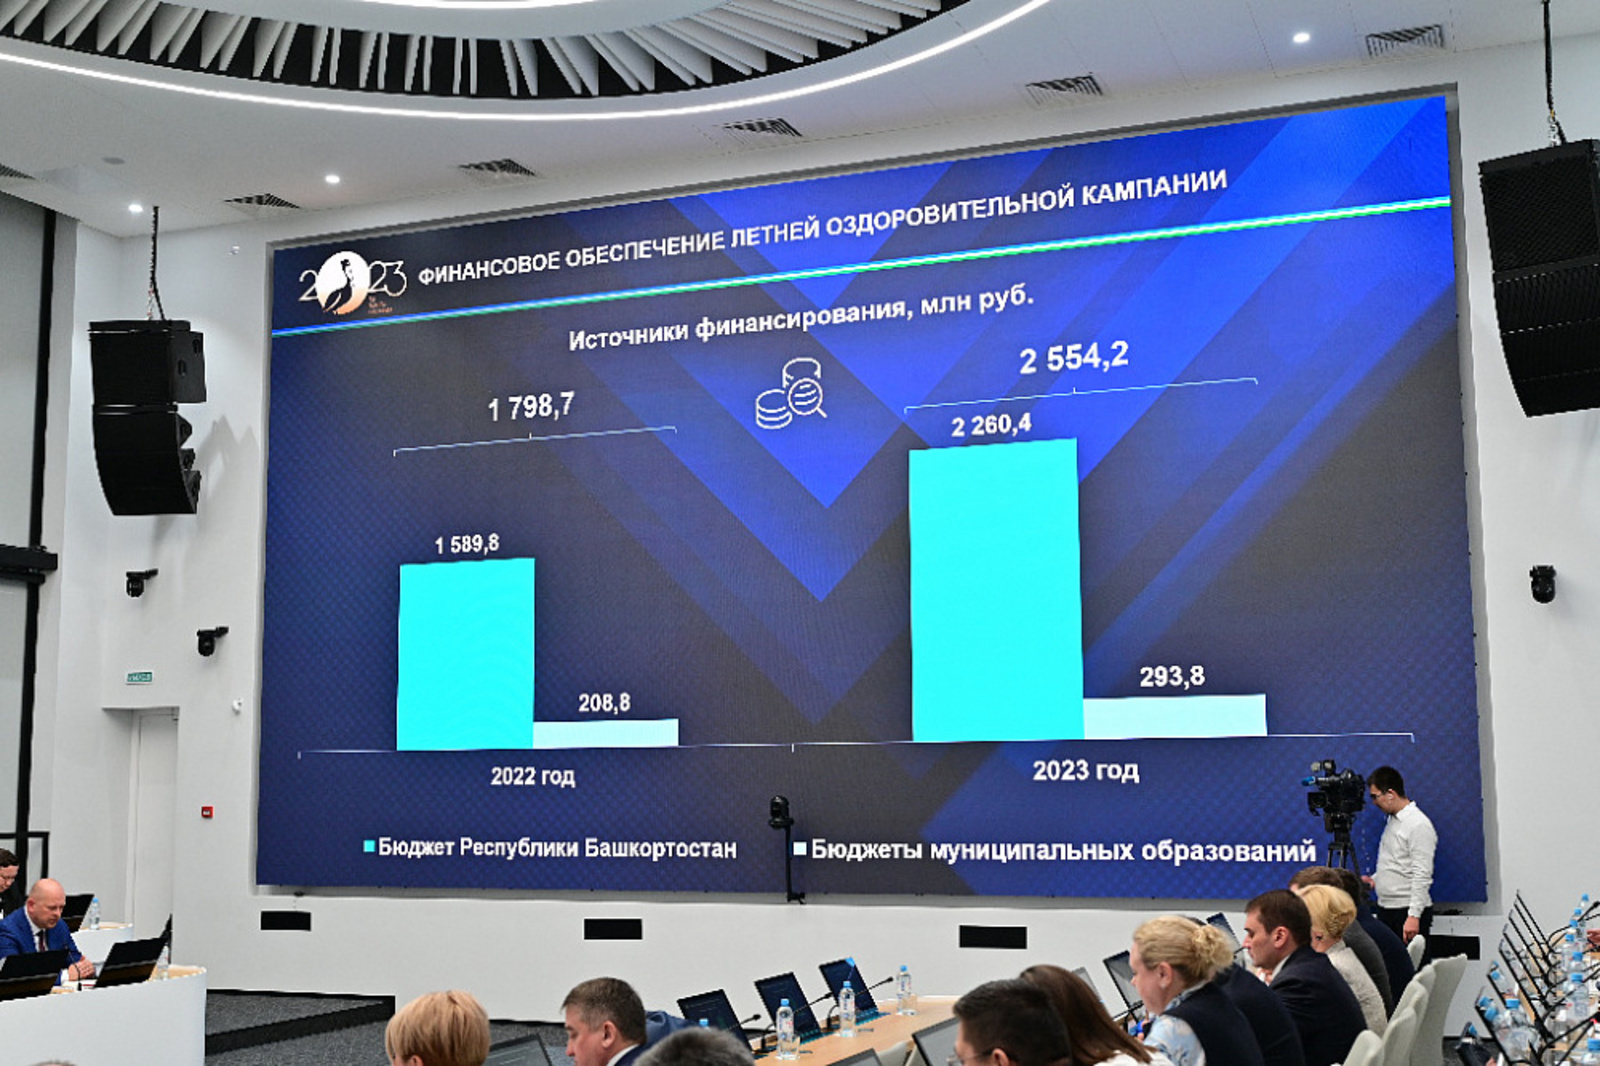 В Башкортостане на летний отдых детей в 2023 году направят более 2,5 млрд рублей